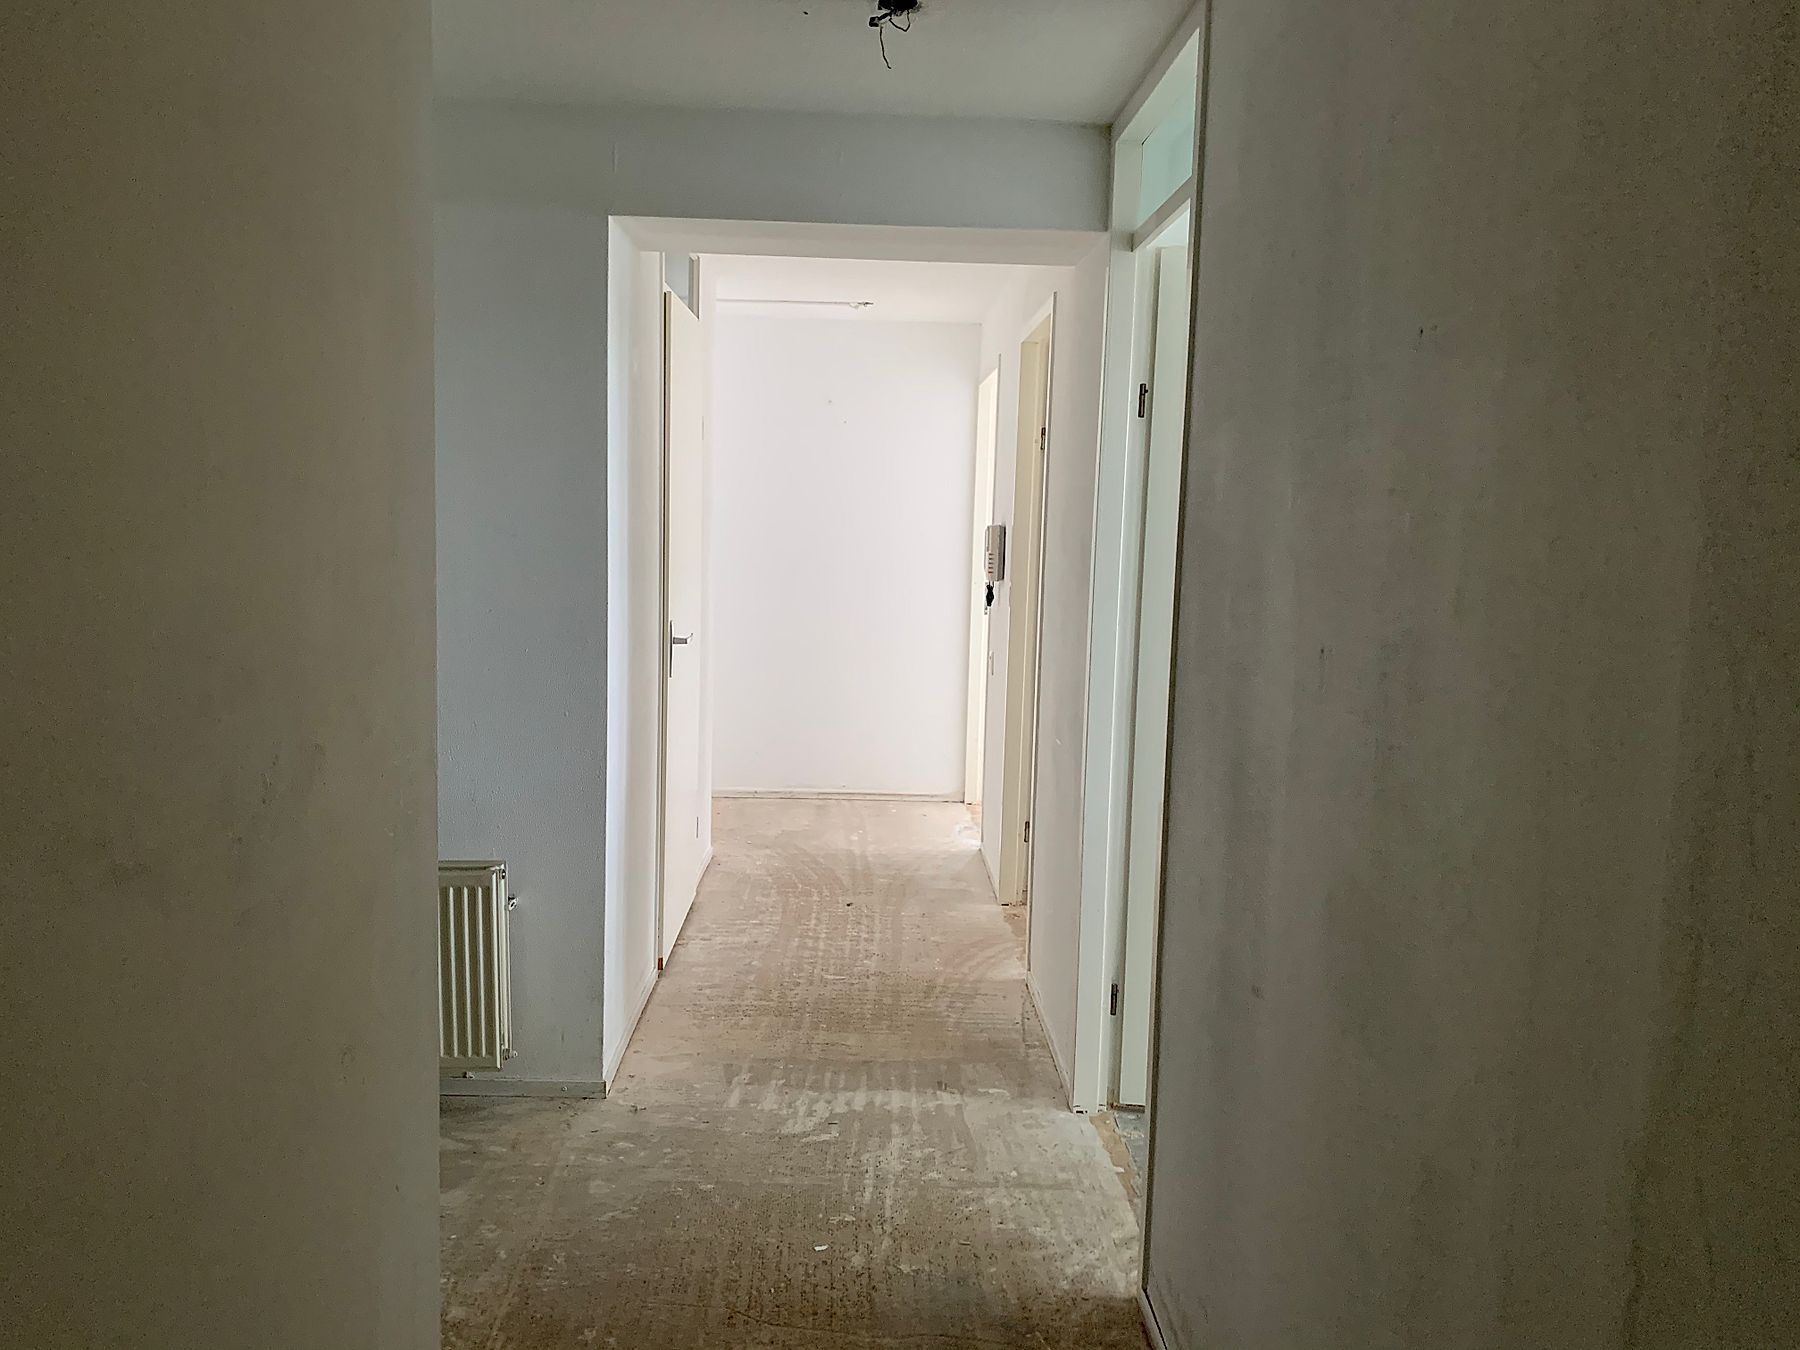 Bekijk foto 1/15 van apartment in Diemen